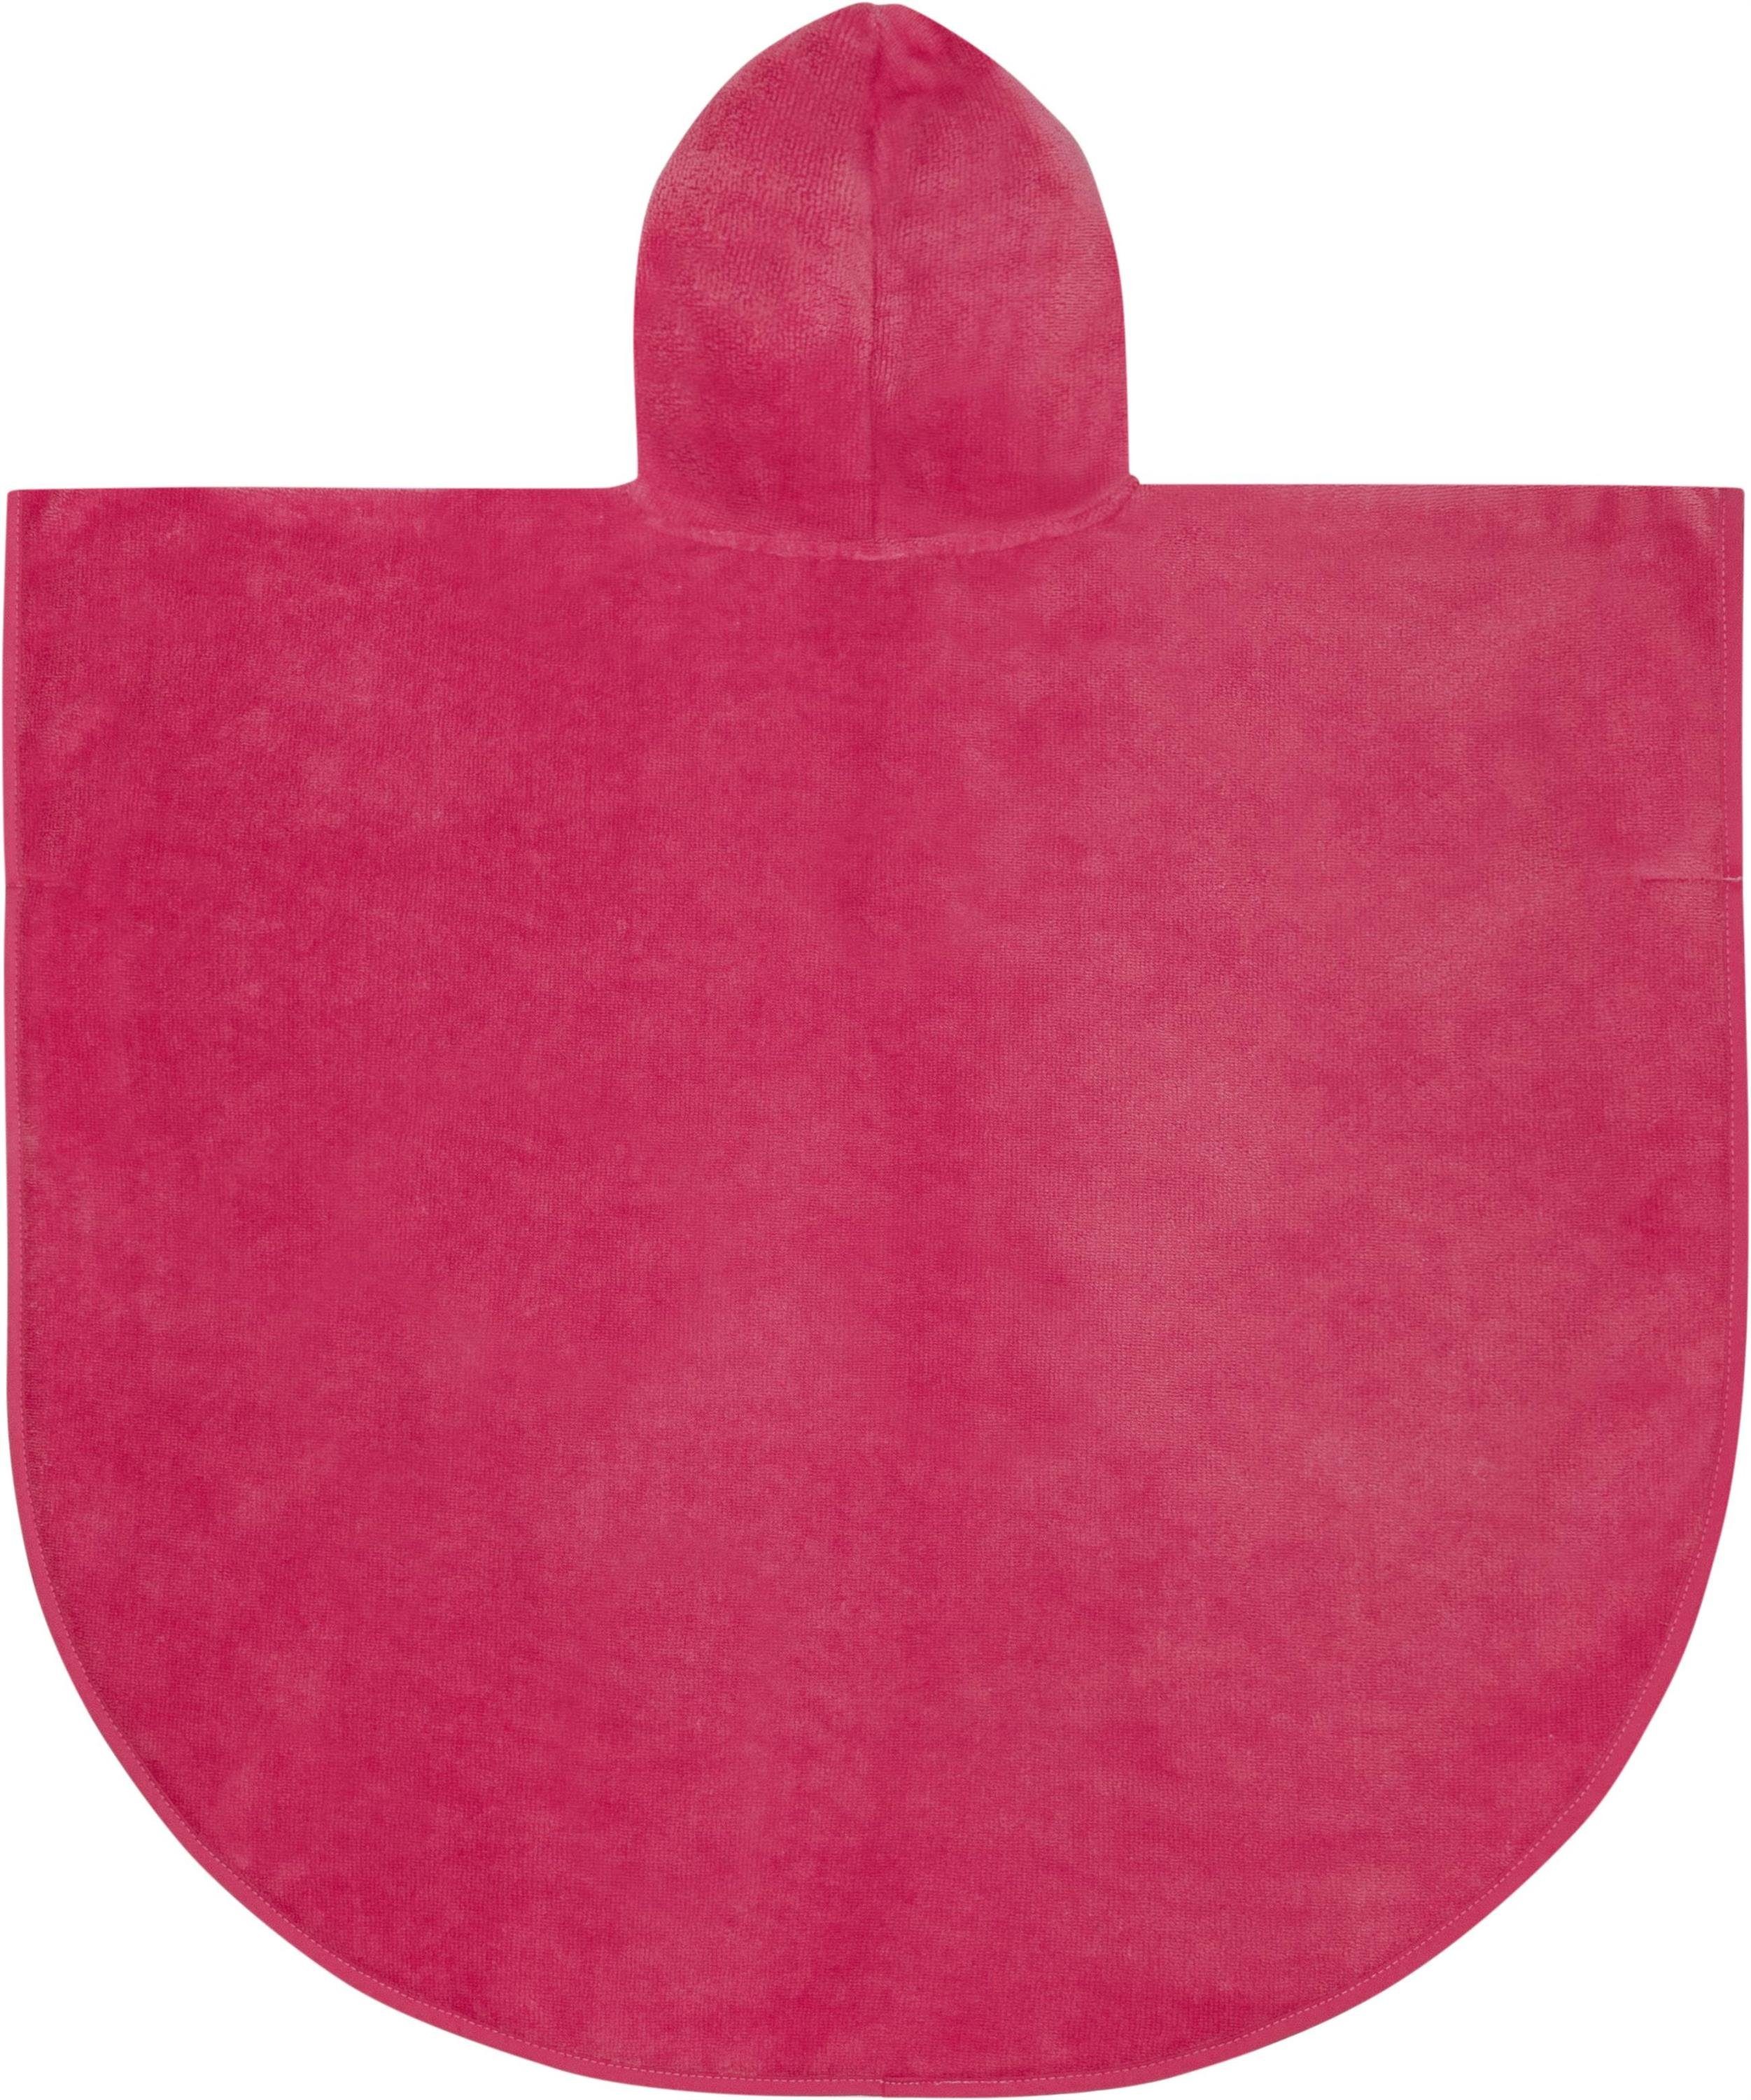 70 x (55 Schlupf, weich normani cm Badeponcho Pink Kapuze Mischfaser, cm), mit Kapuze, Badeponcho Kinder